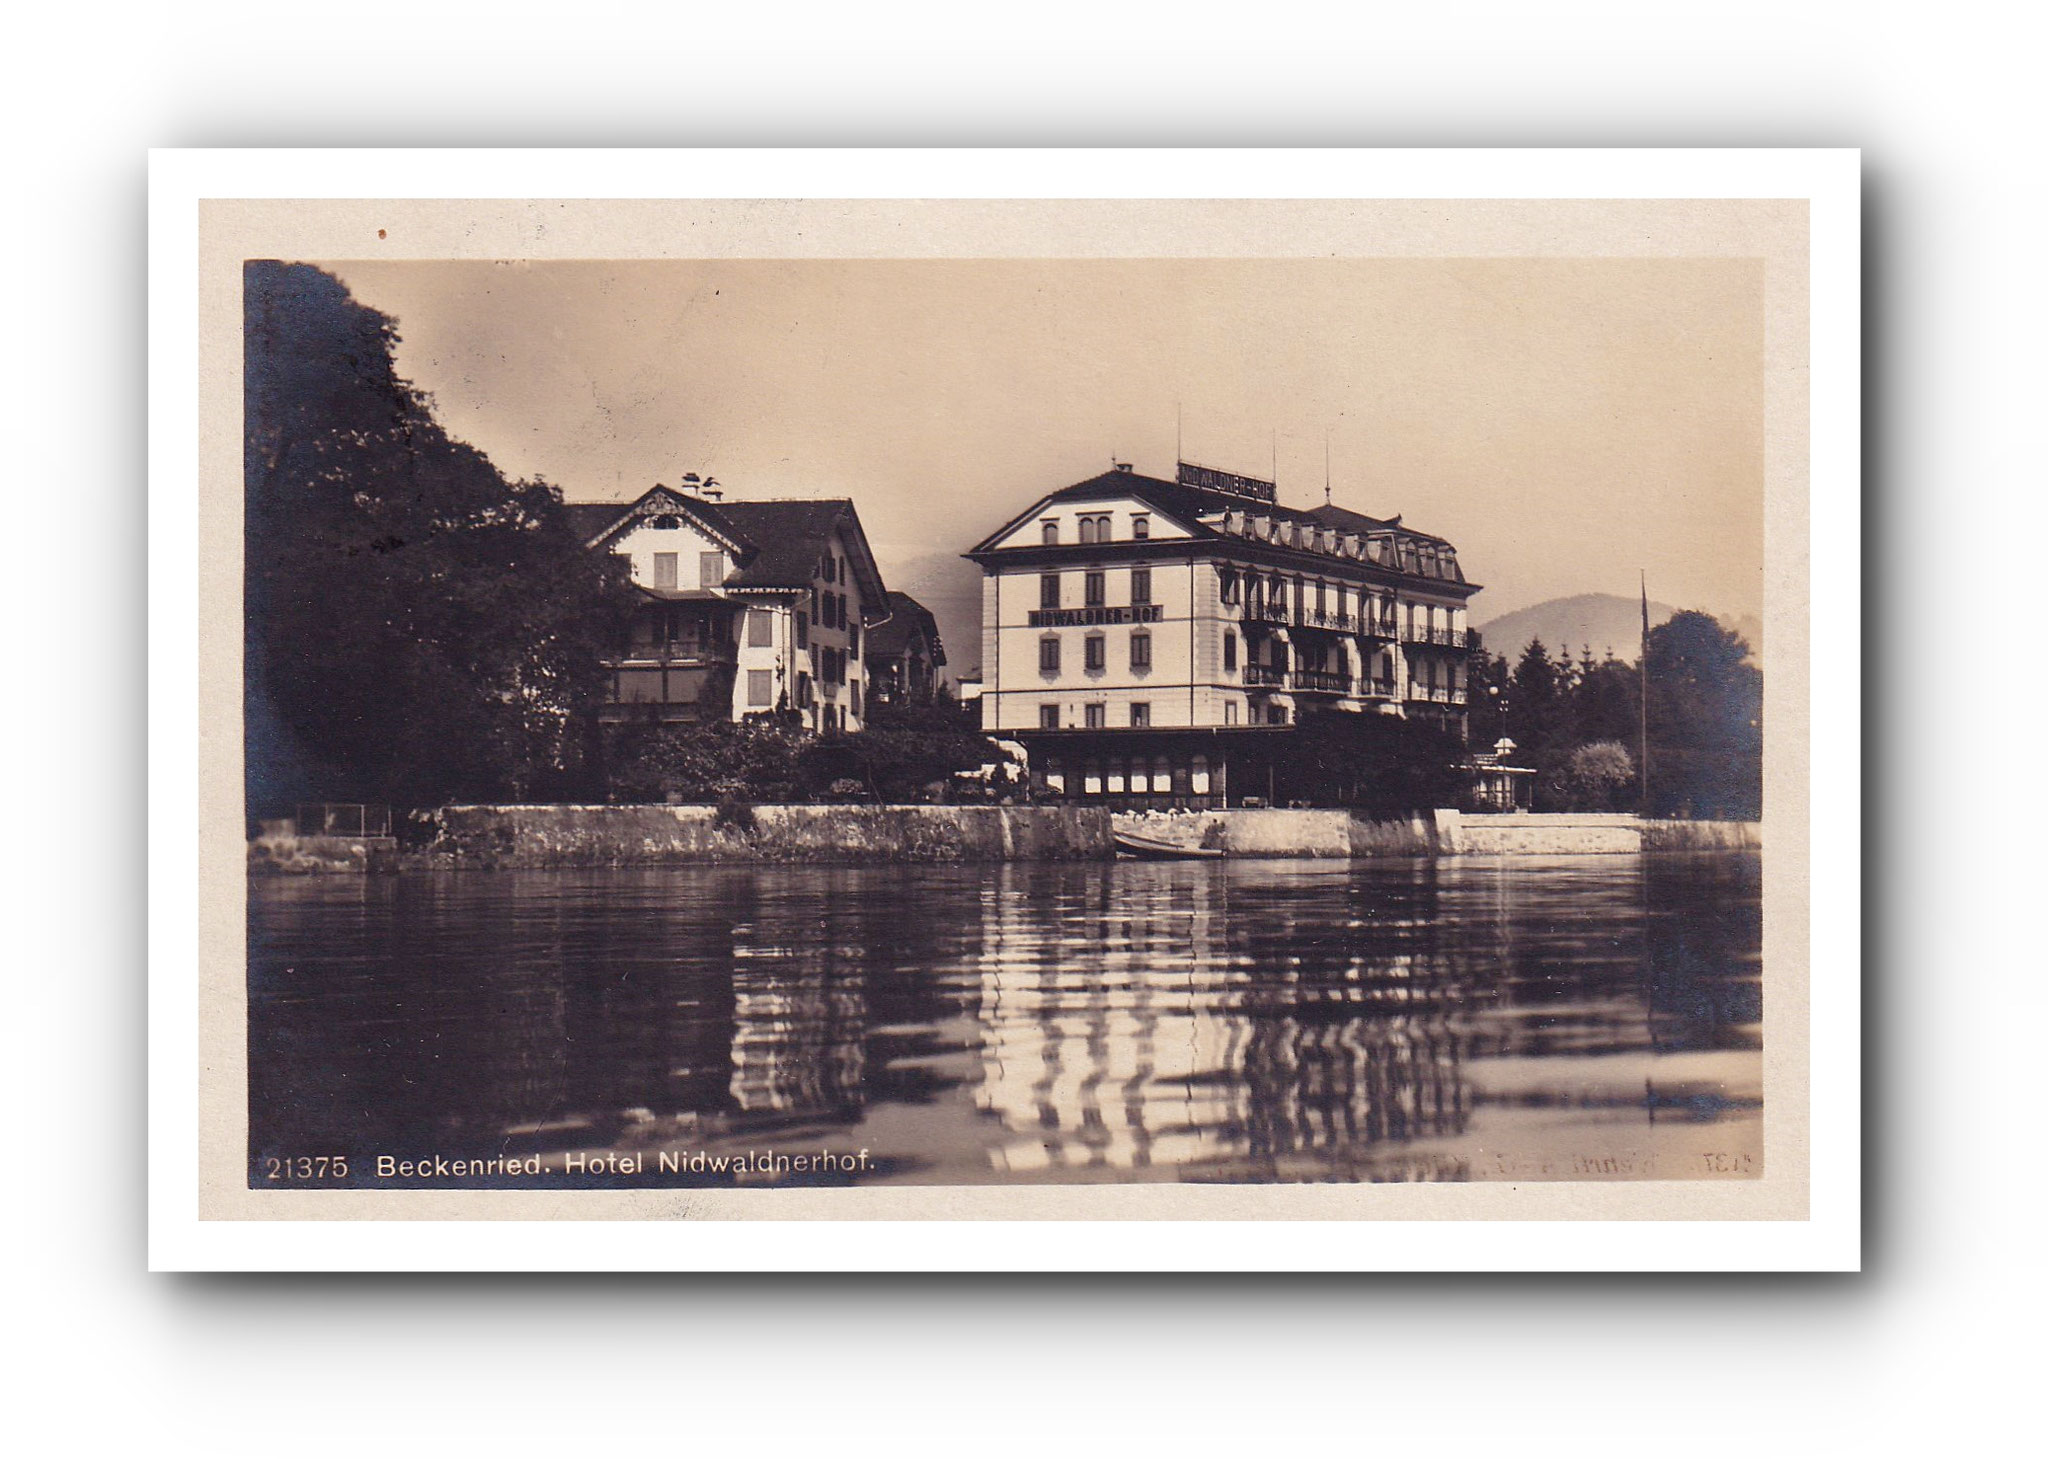 - Hotel Nidwaldnerhof - BECKENRIED - 06.08.1923 -